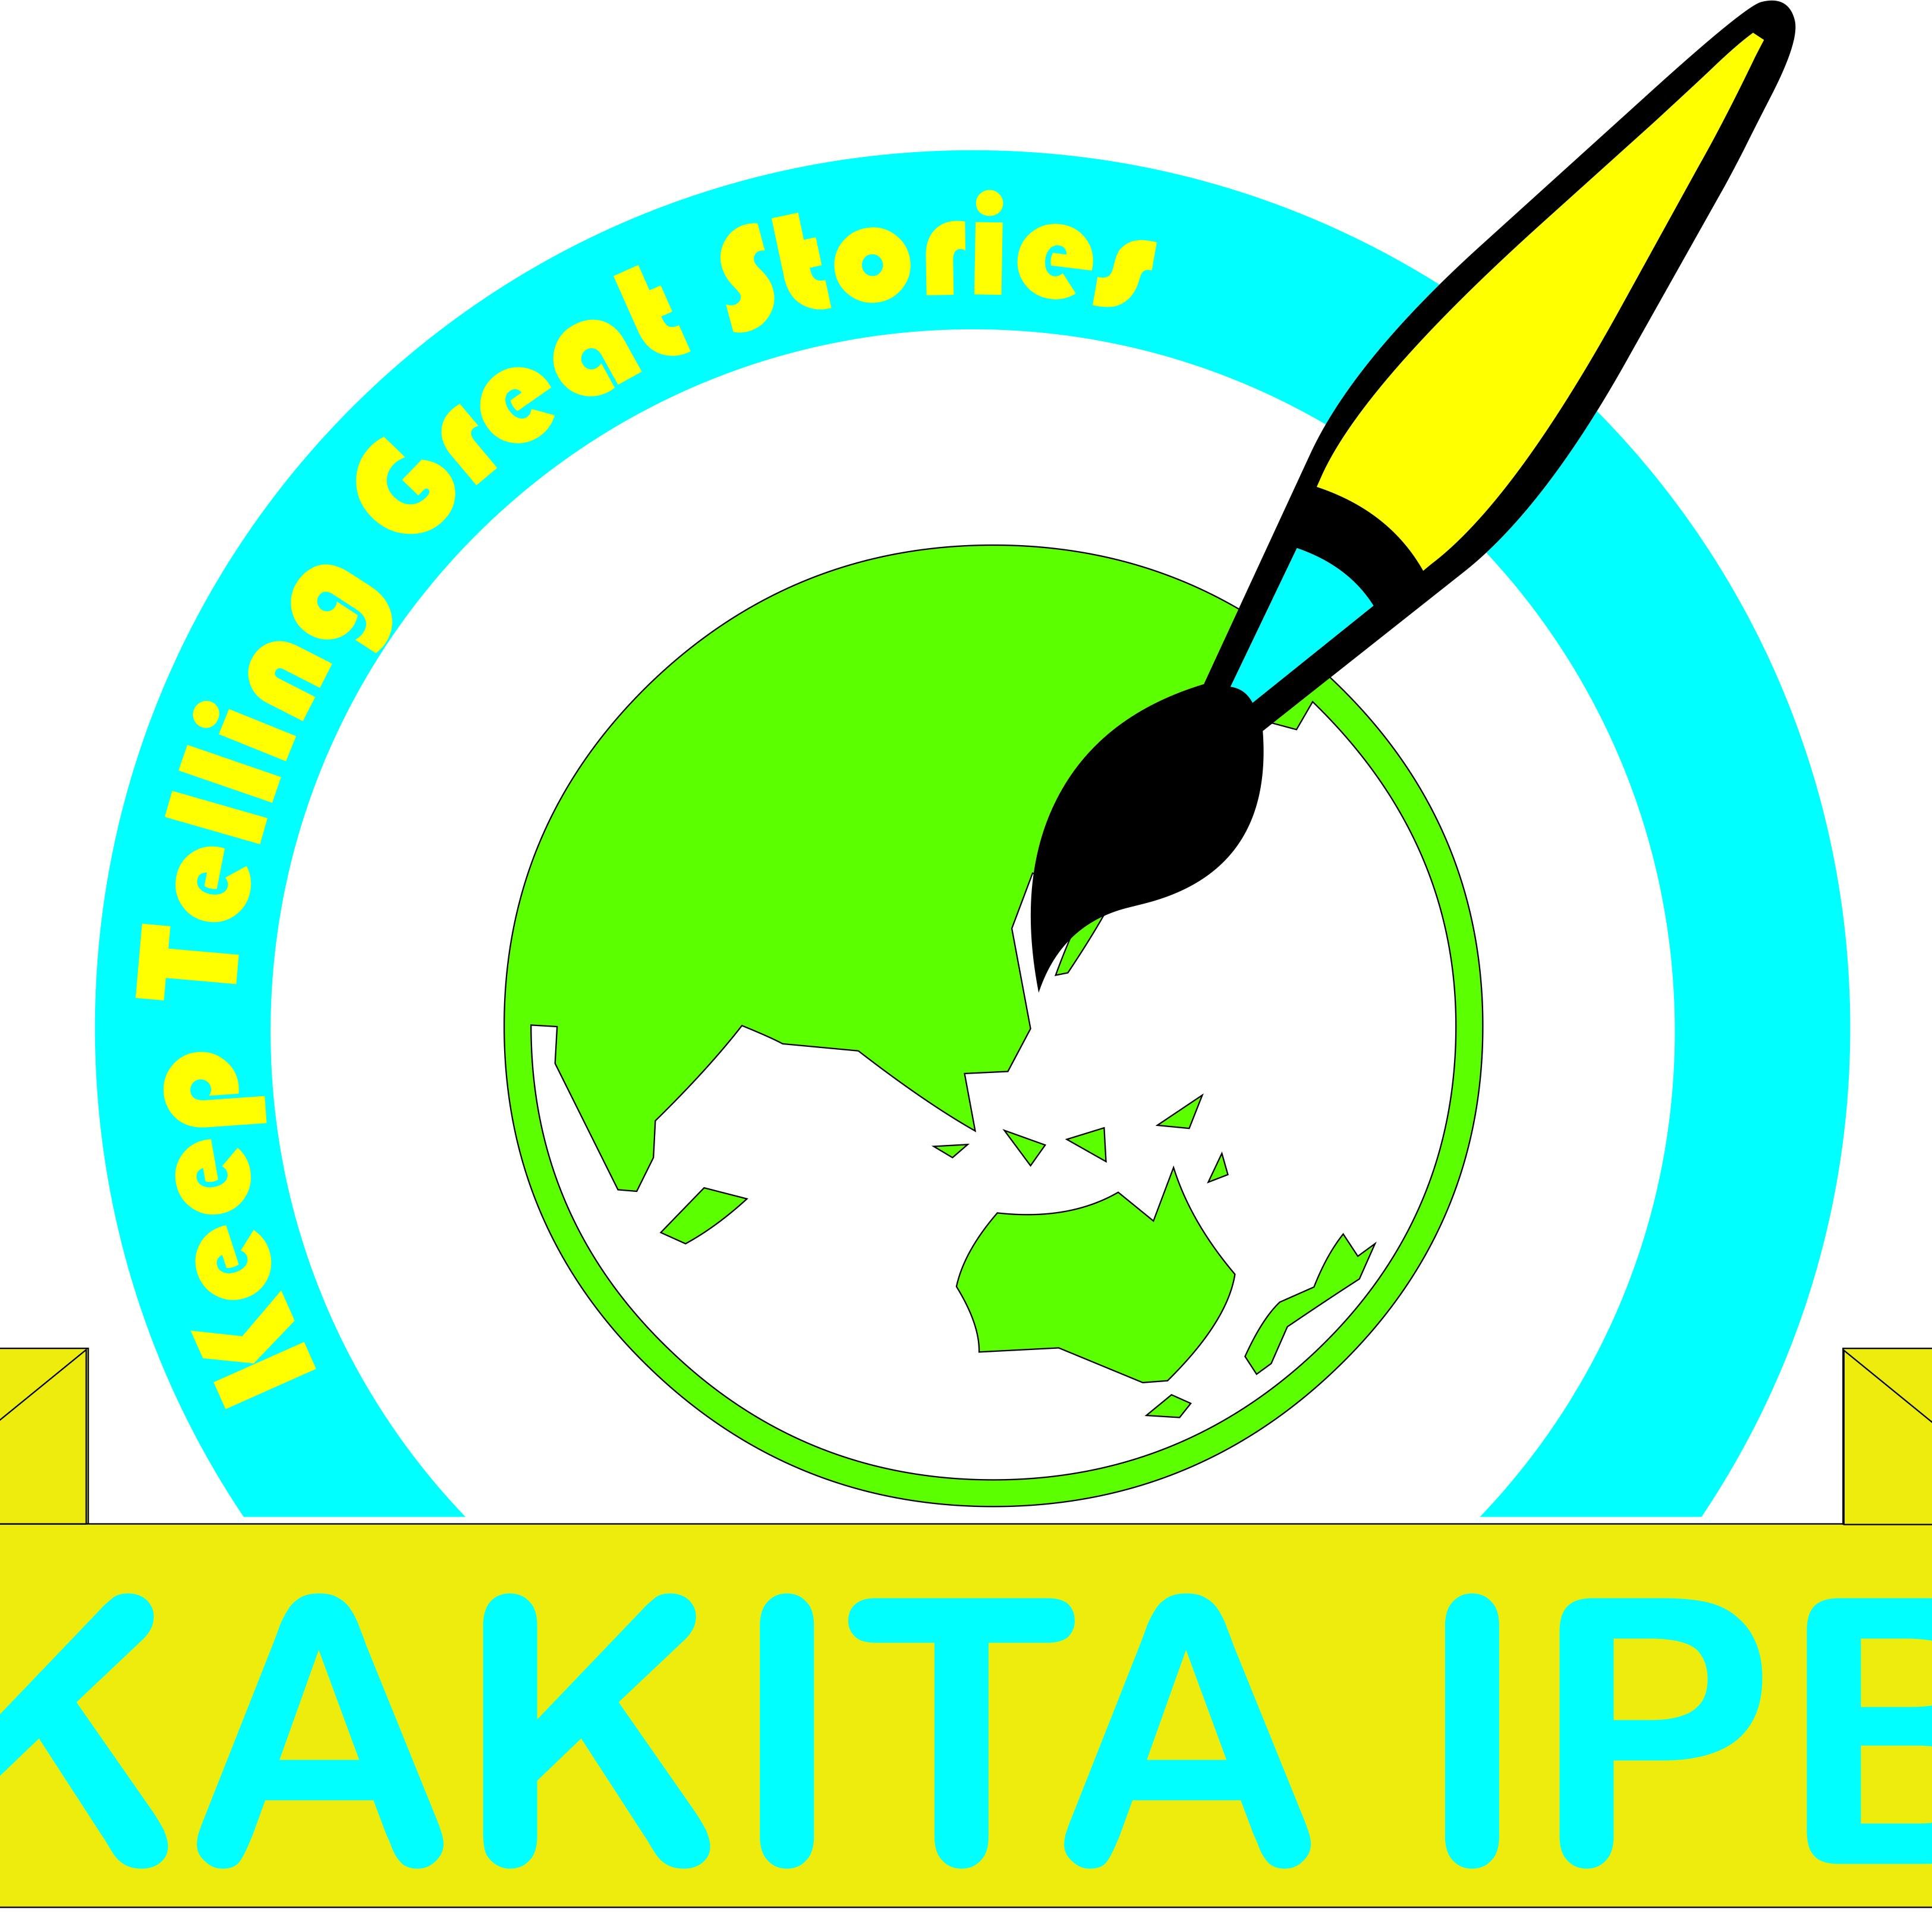 Komunitas menulis untuk civitas dan alumni IPB - Keep telling great stories | OR Kakita 52, 4-11 September 2015 | sms: nama_departemen_no hp ke 085811930270